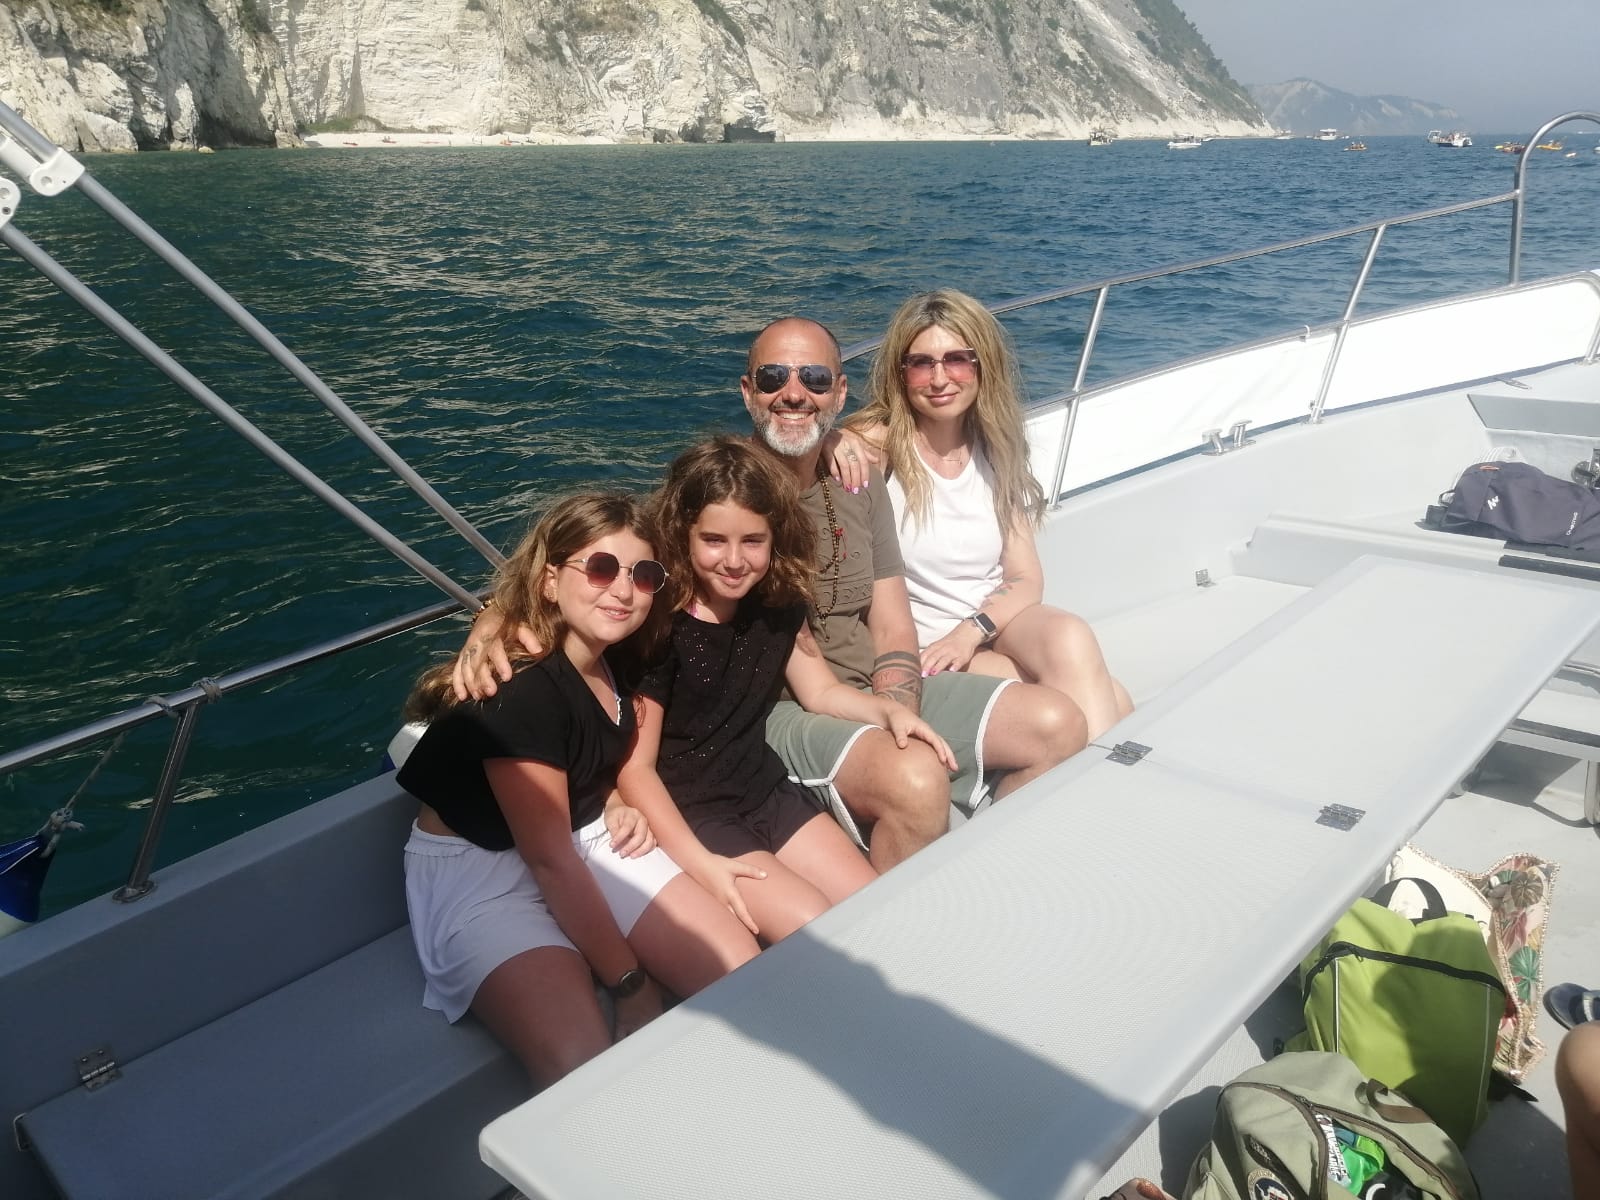 Gita in barca riviera del conero bellezza marche adriatico paesaggi esperienza brezza marina gruppi famiglia esperti marinai numana porto ancona marche 